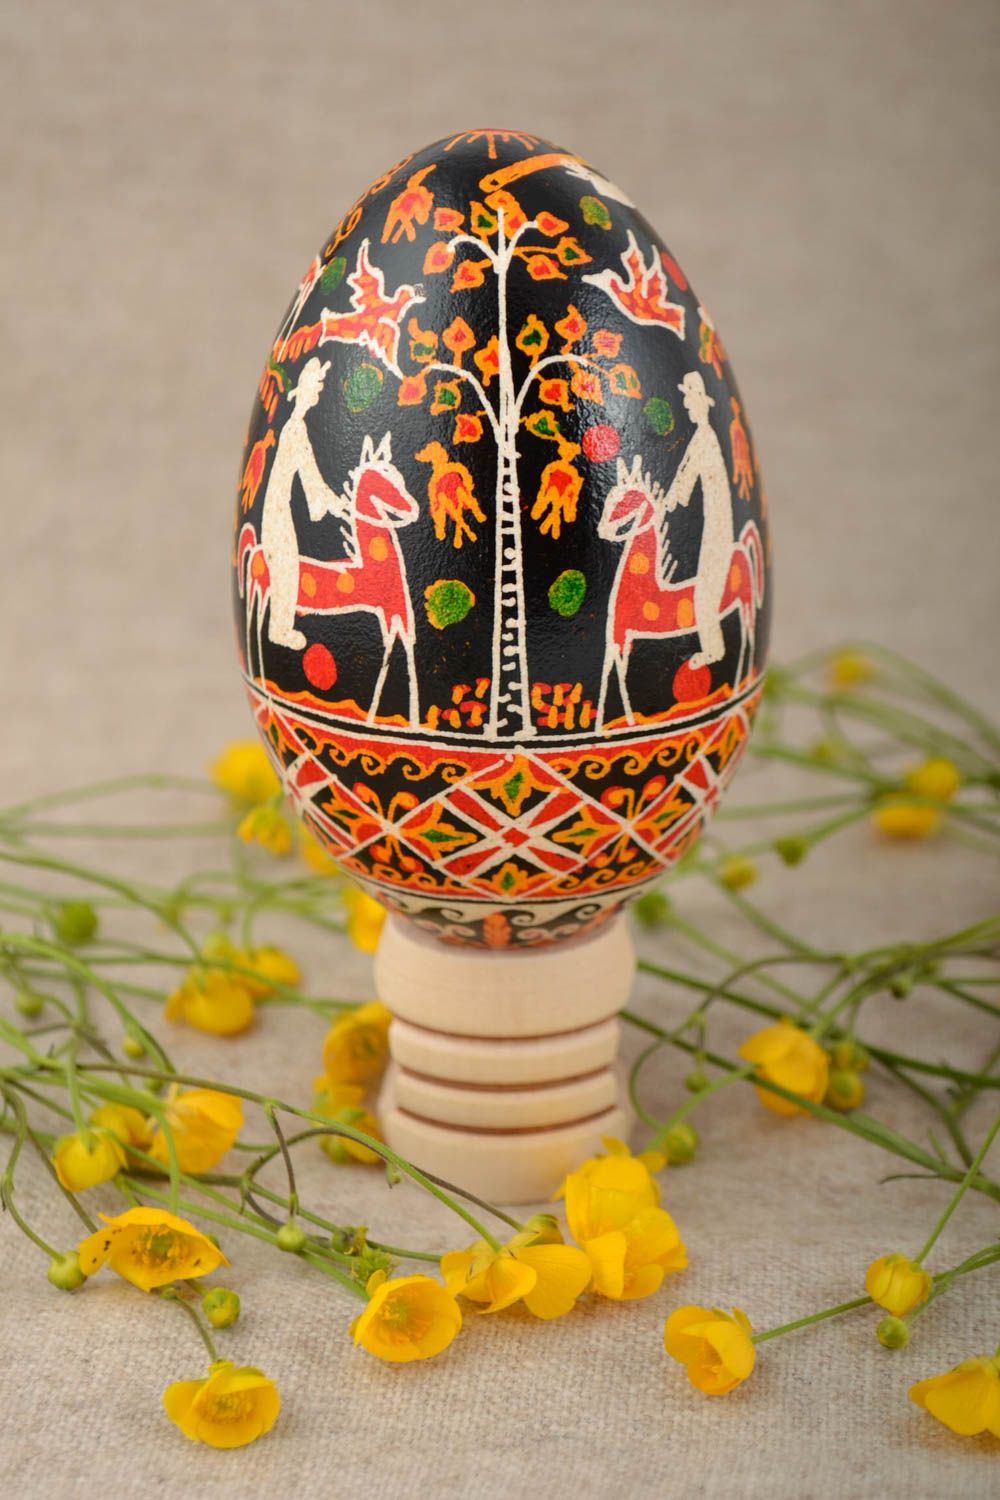 Расписное яйцо гусиное красивое подарок на Пасху цветное ручной работы фото 1